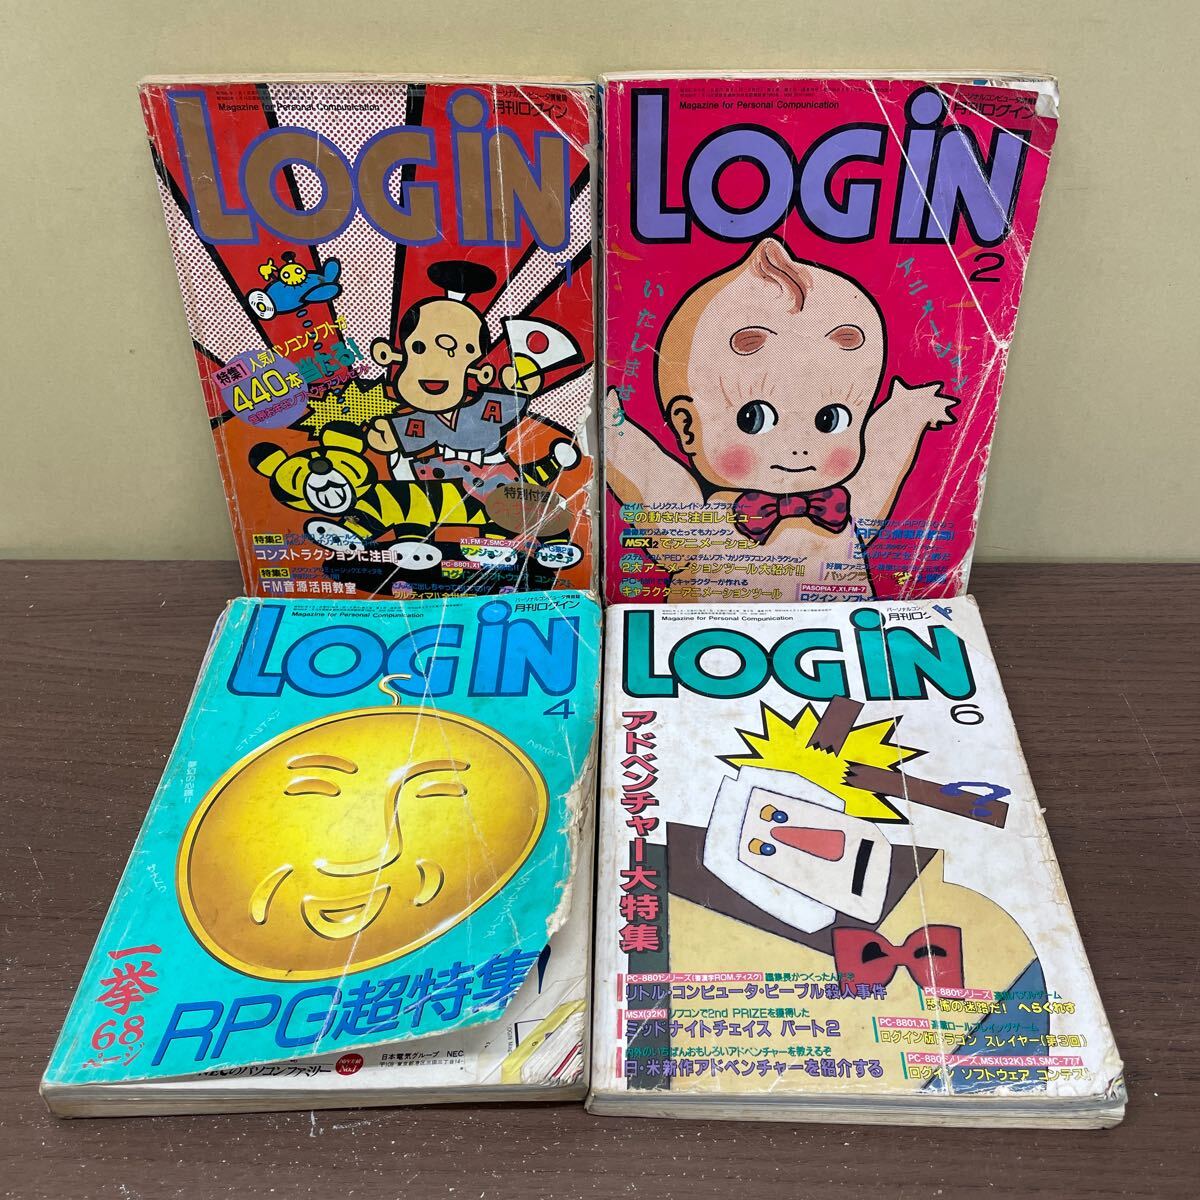 月刊ログイン LOGiN アスキー ASCII 1986年 まとめ売り/古本/未清掃未検品/巻数状態はお写真でご確認下さい/ノークレームで/読み用で/劣化